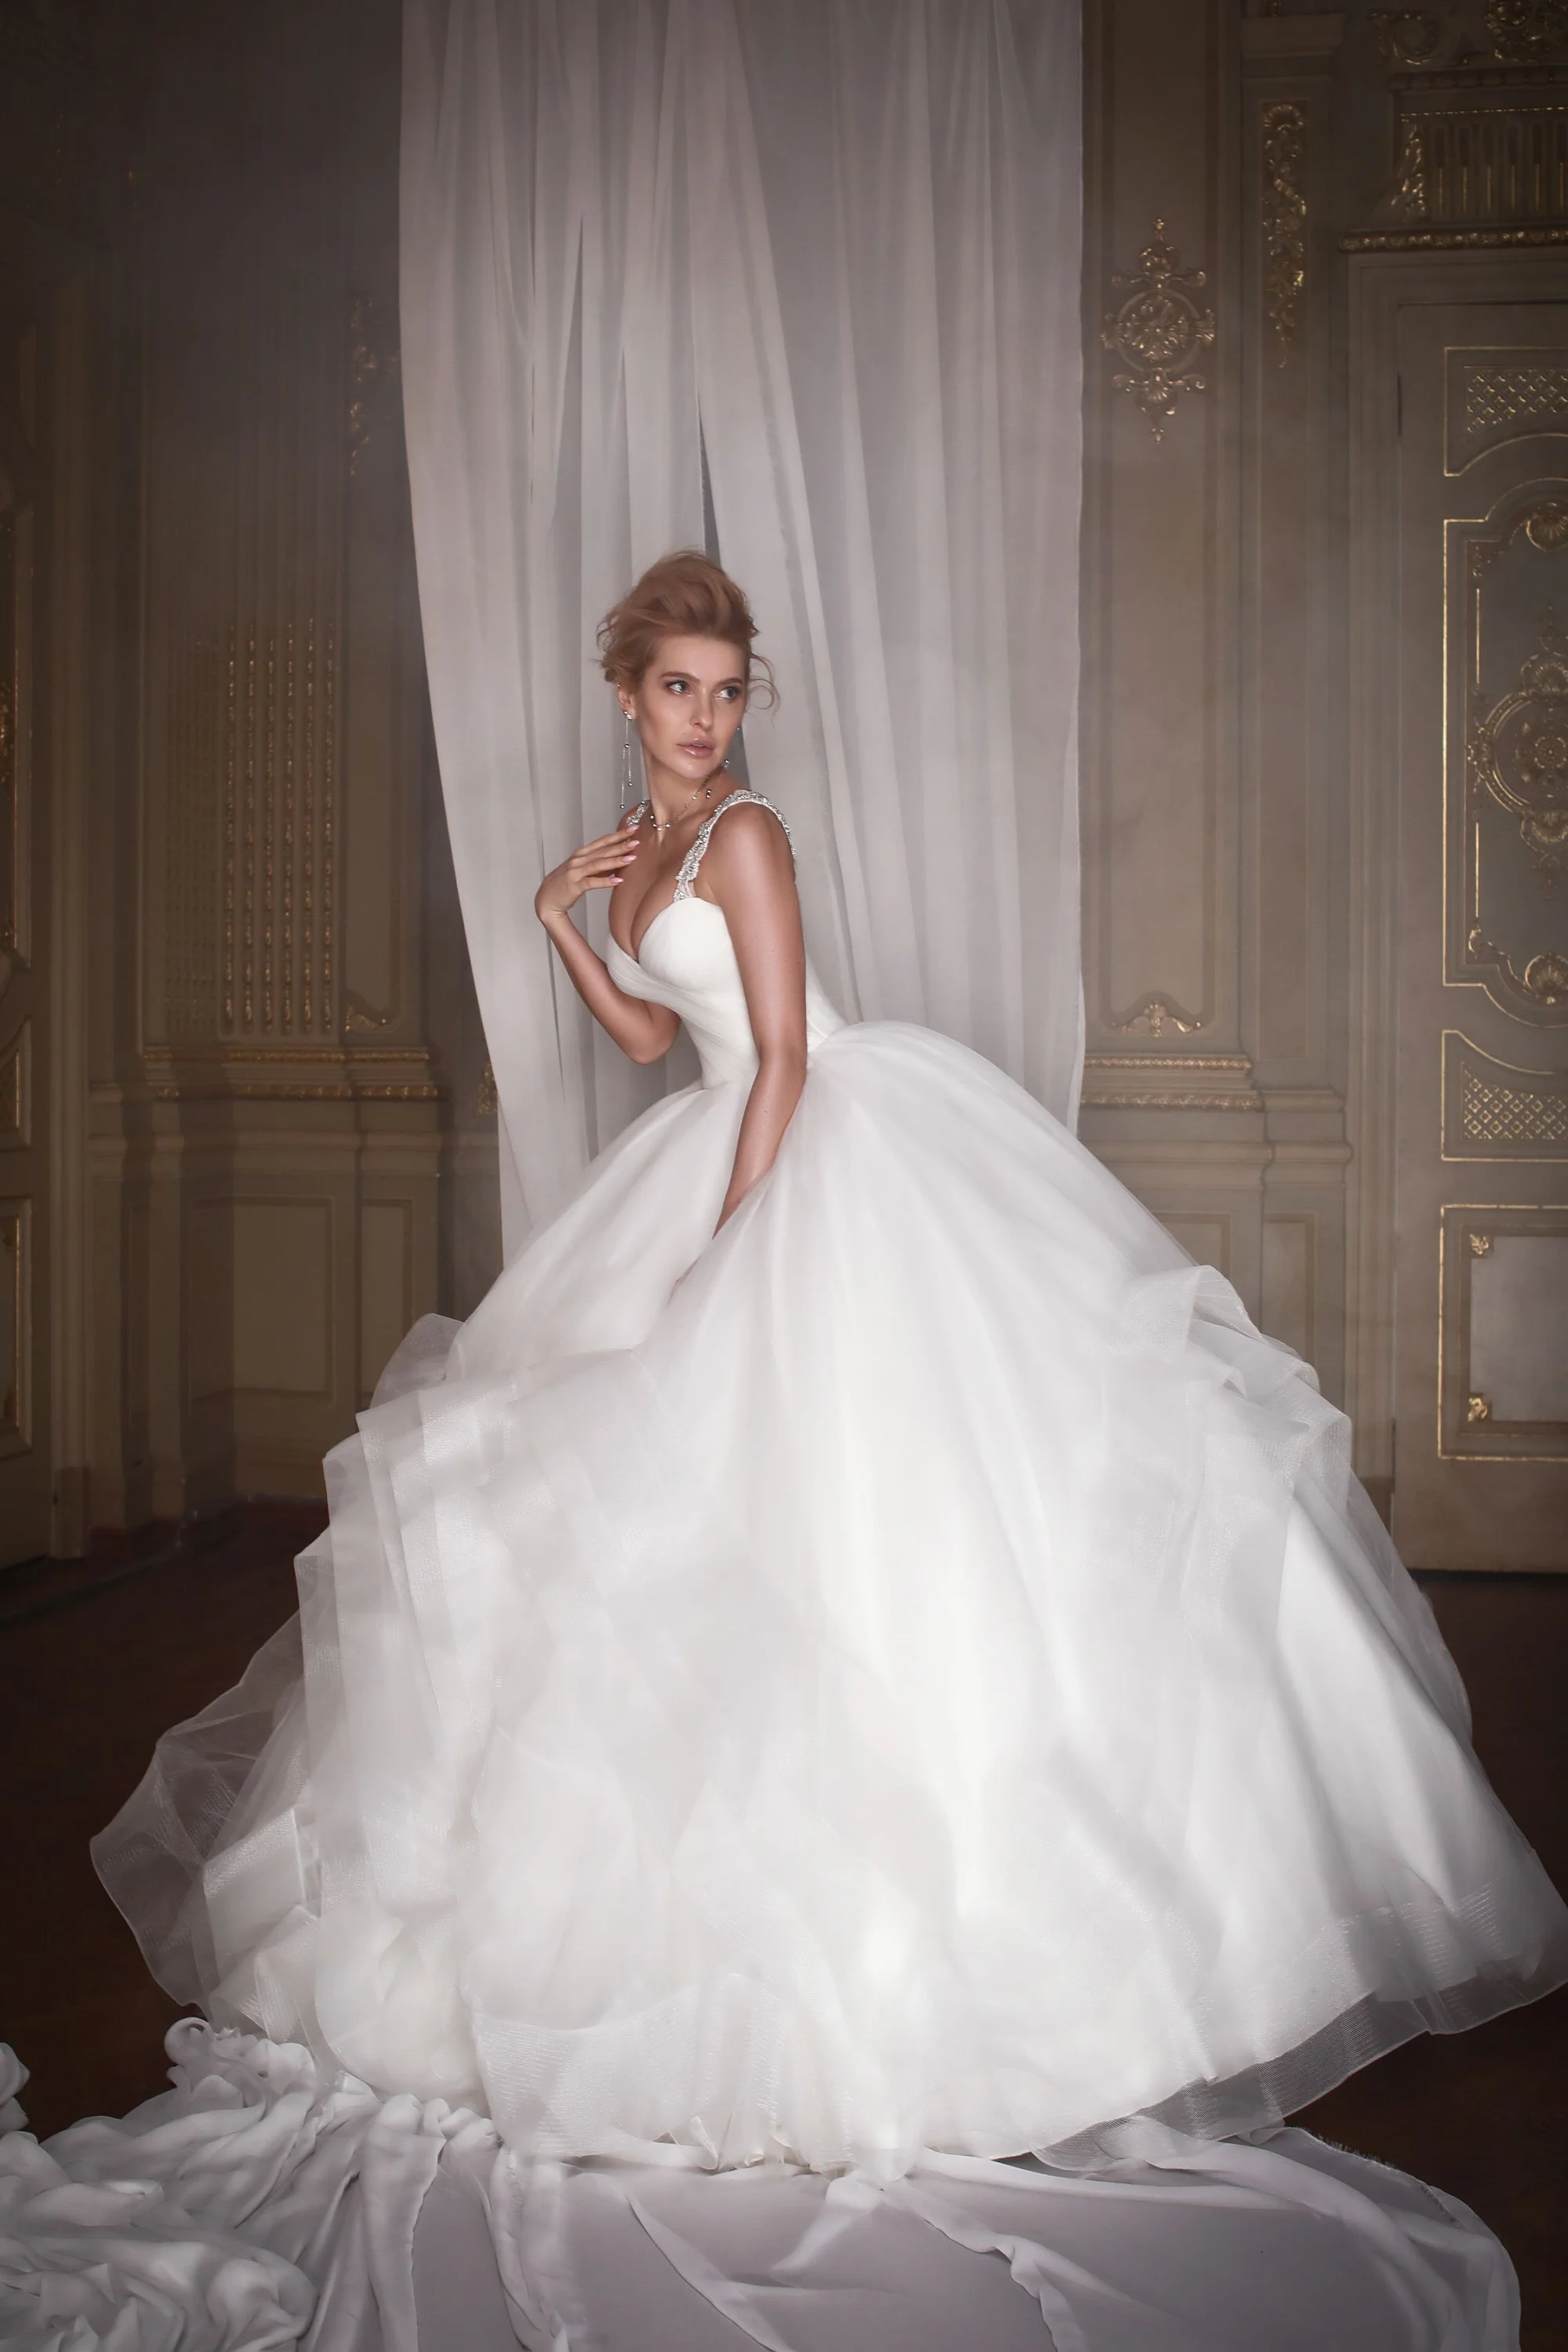 Злата Огневич и Анна Буткевич примеряли роскошные свадебные платья от Андре Тана - фото 425437